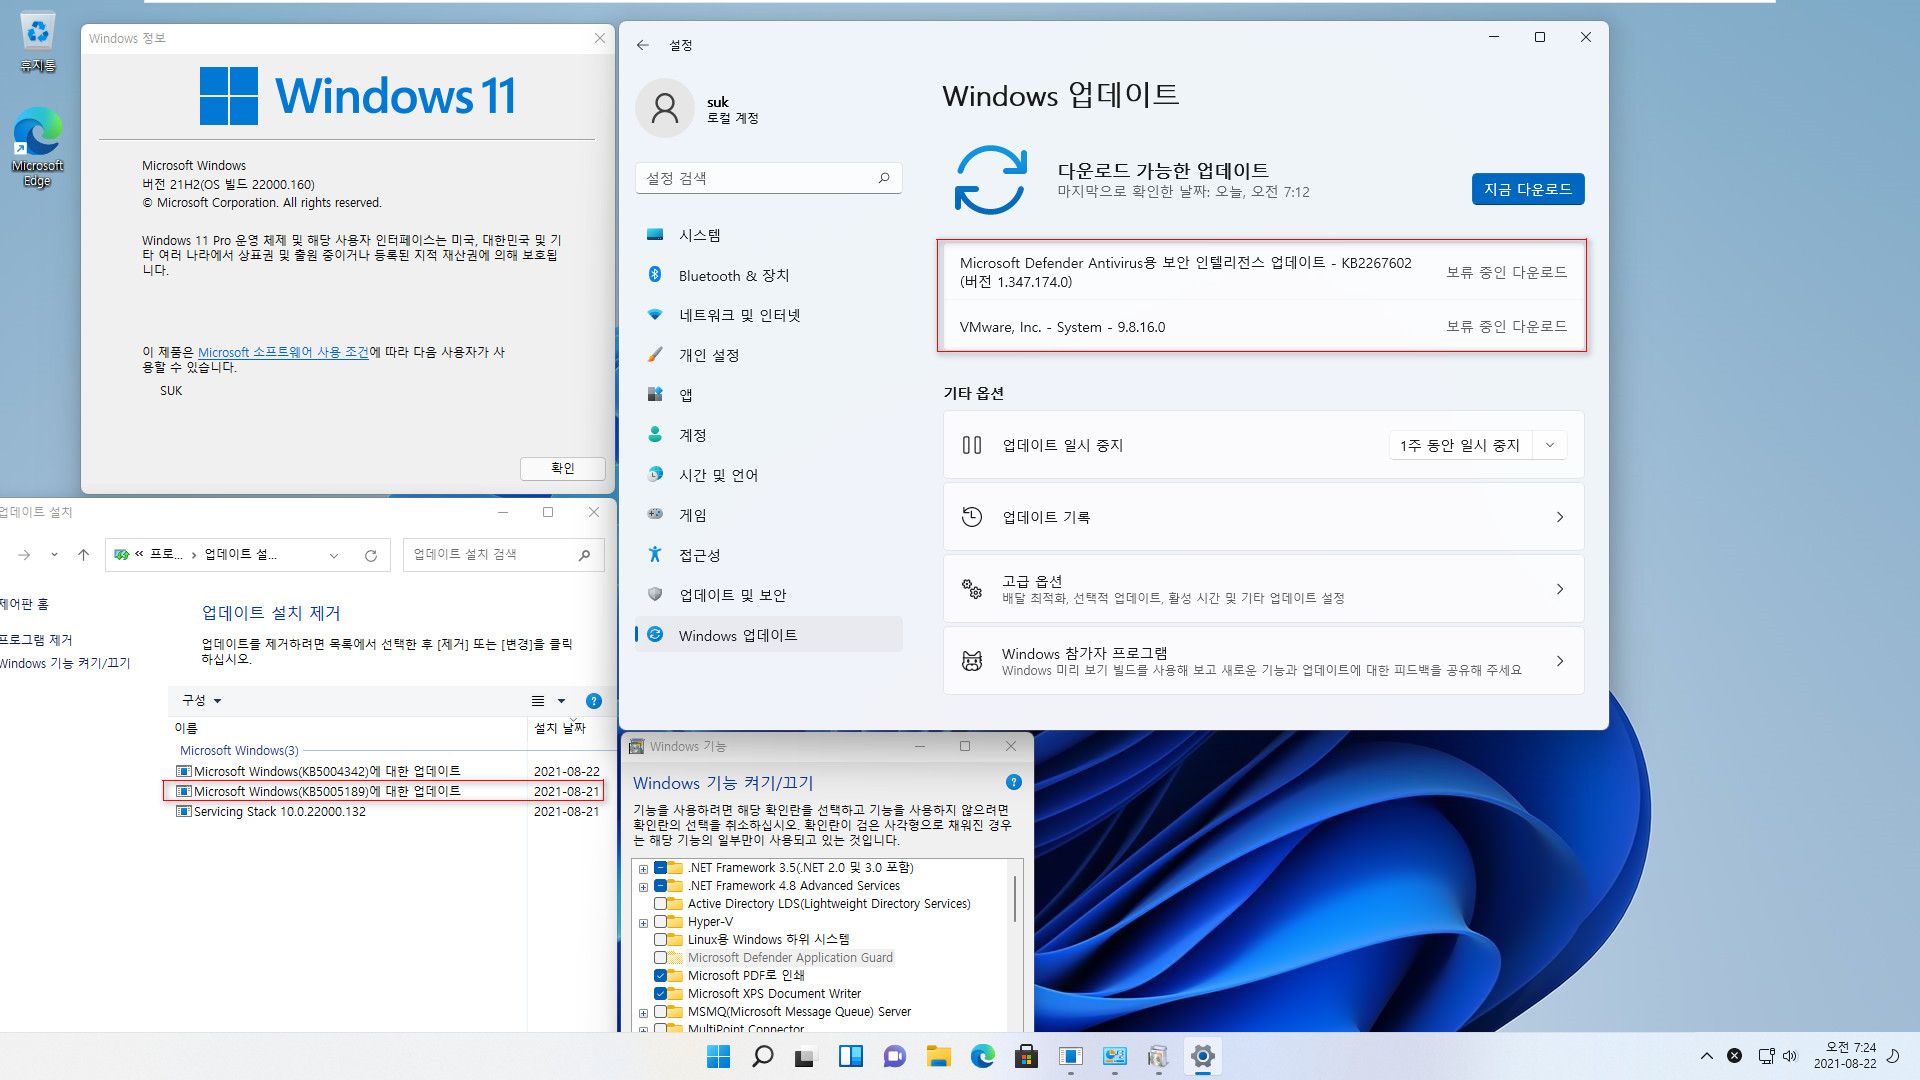 Windows 11 인사이더 프리뷰 - 버전 21H2 (OS 빌드 22000.160) 나왔네요 - 개발자 채널 + 베타 채널 - 설치 테스트 - 22000.160 빌드는 원래 중복으로 누적 업데이트가 표시되지 않네요 - 다시 원래 하던대로 닷넷 업데이트 등까지 통합하여 설치 테스트 2021-08-22_072418.jpg